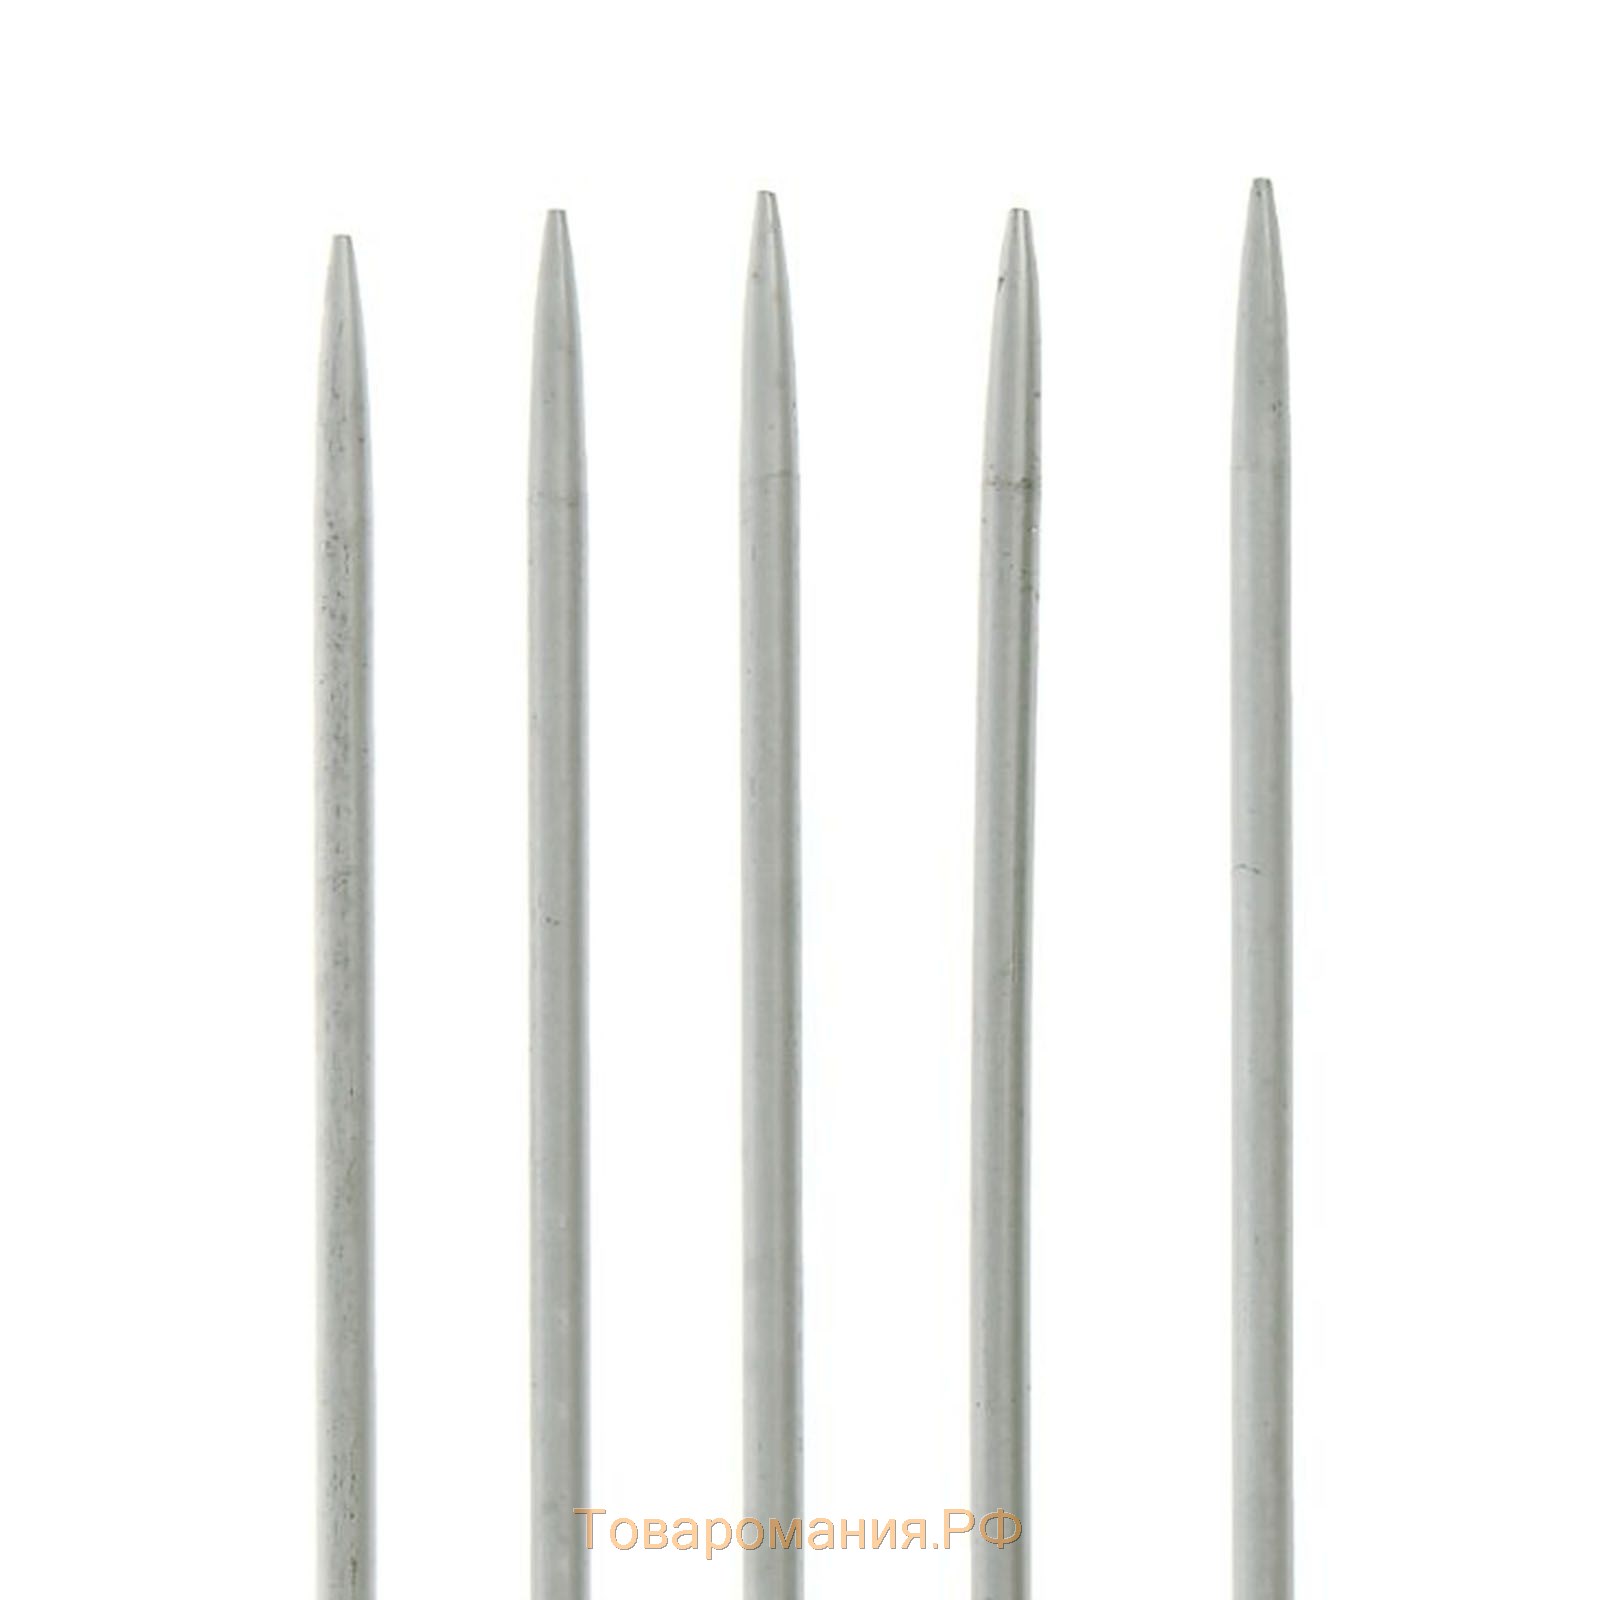 Спицы для вязания, чулочные, с тефлоновым покрытием, d = 4 мм, 20 см, 5 шт